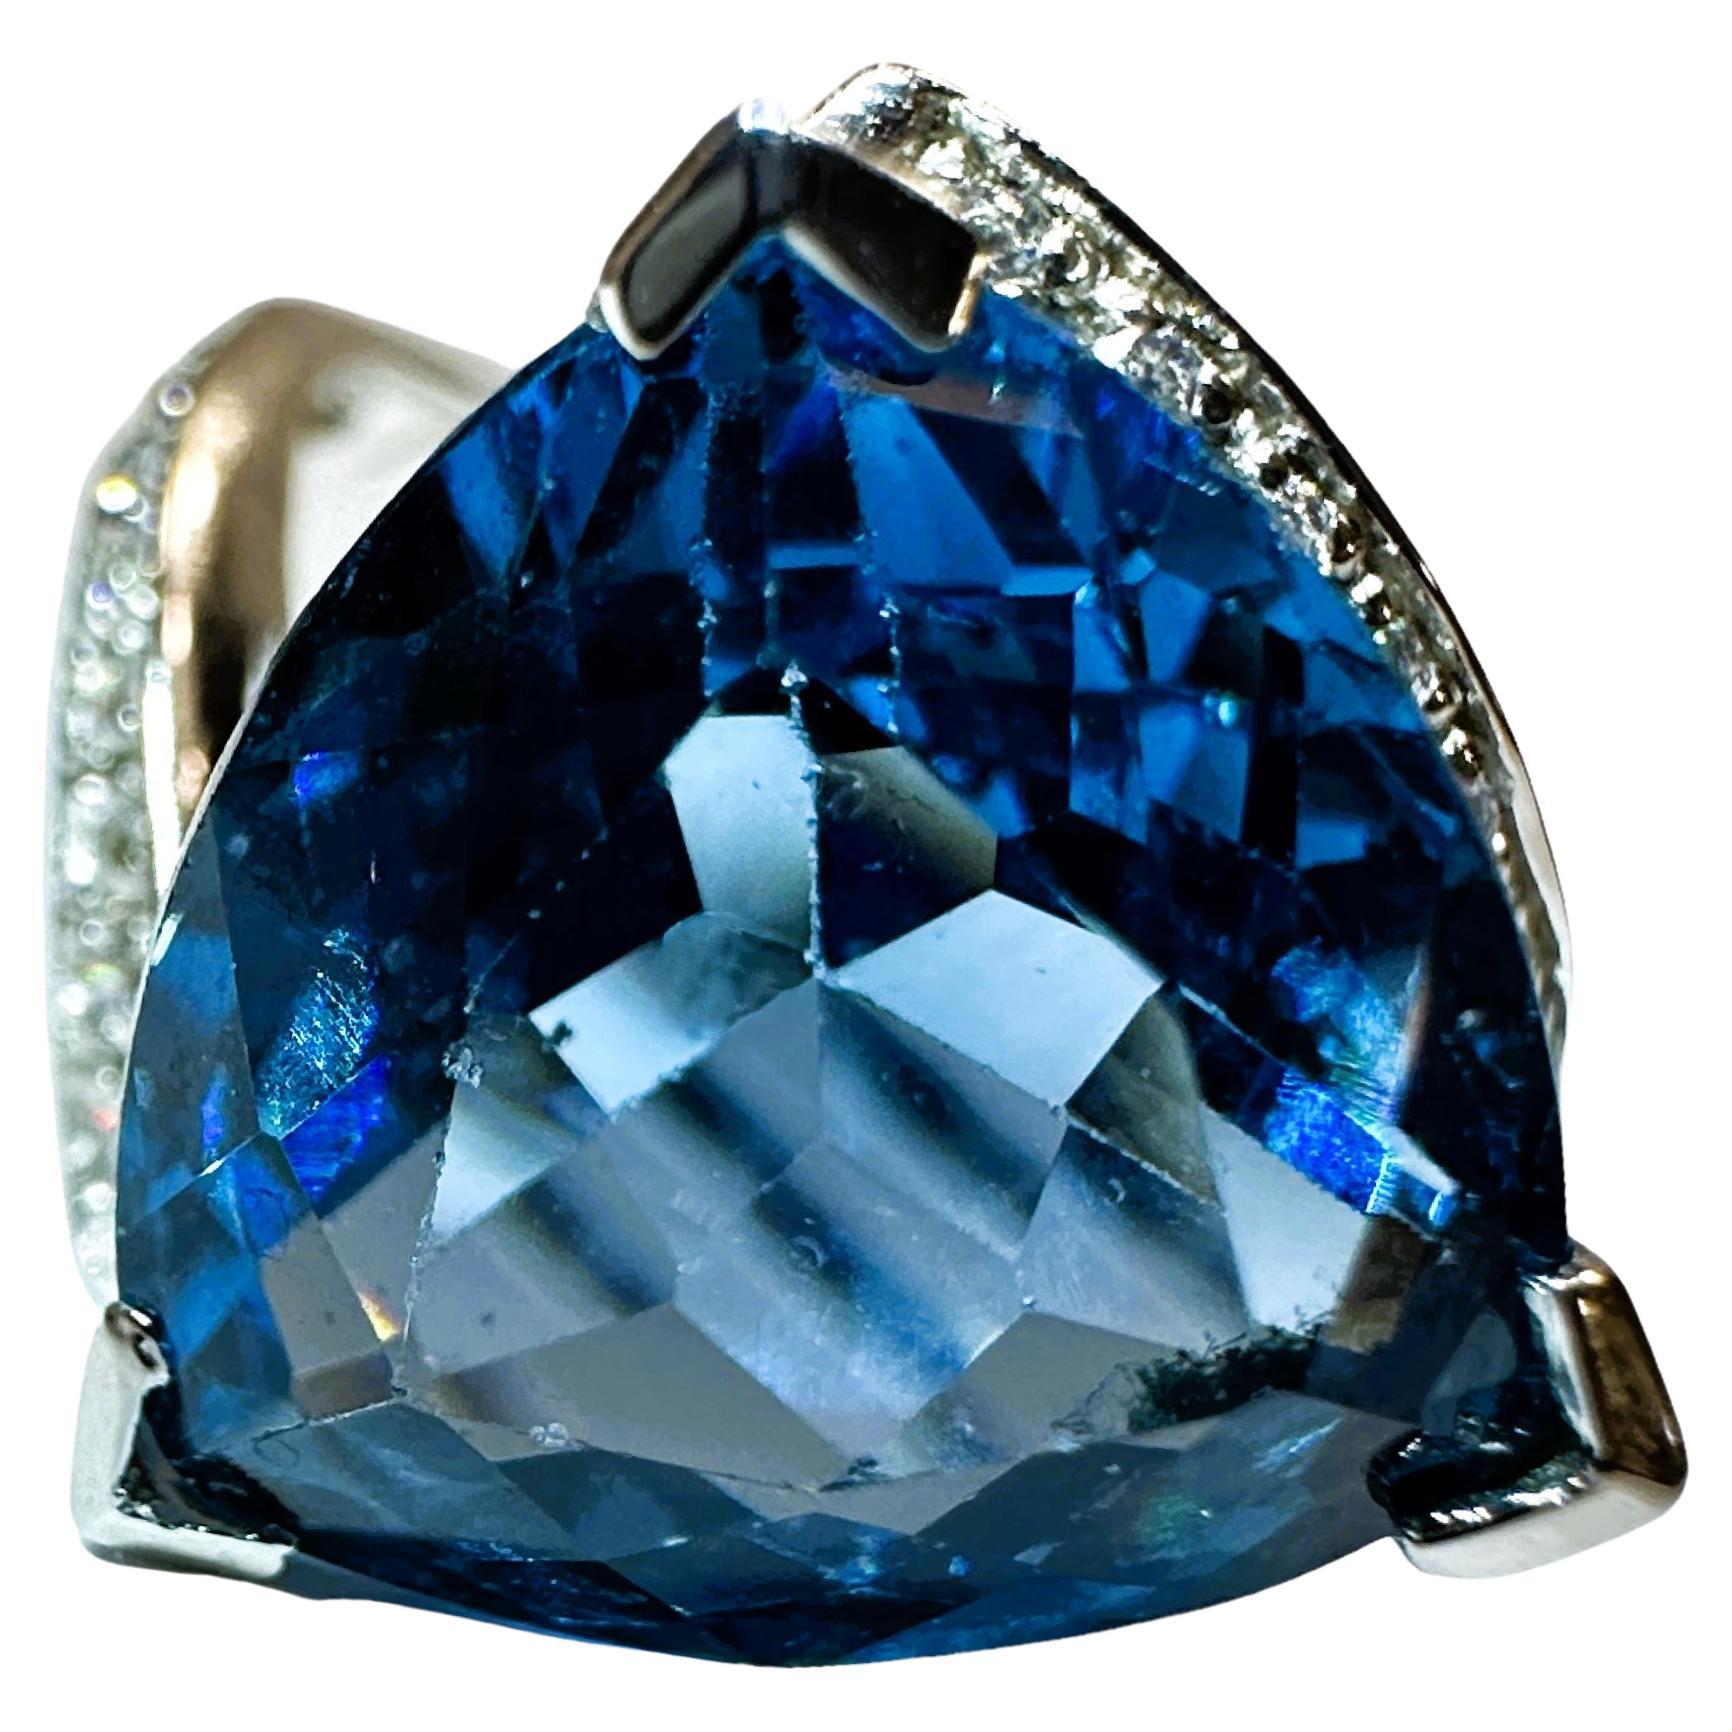 Nuevo anillo africano de 10.6 quilates de topacio azul suizo y zafiro blanco de ley